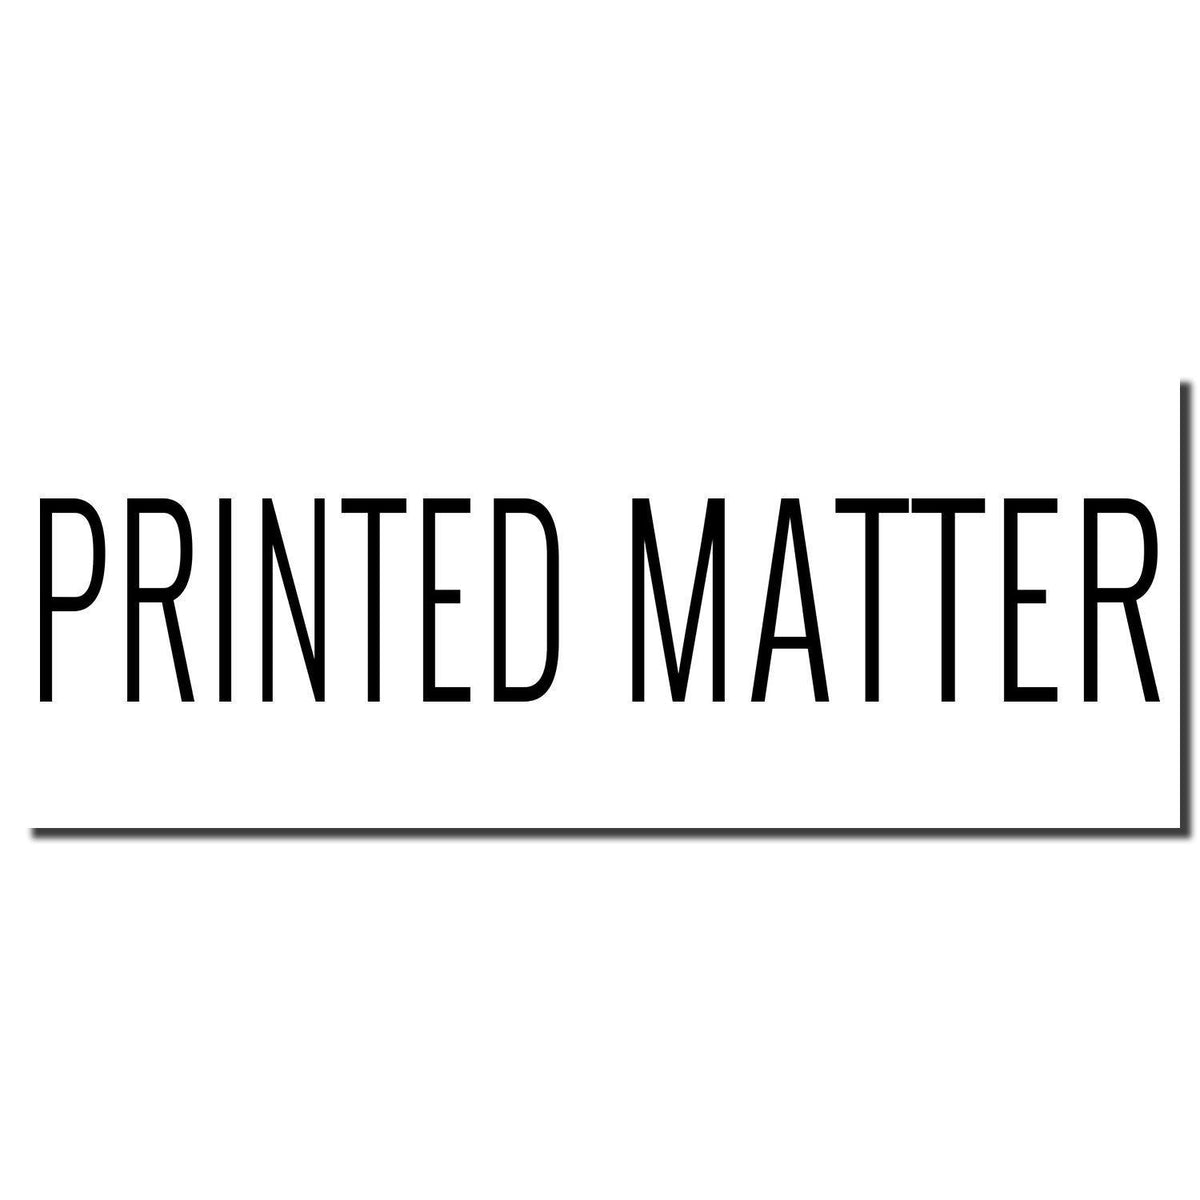 Enlarged Imprint Large Printed Matter Rubber Stamp Sample